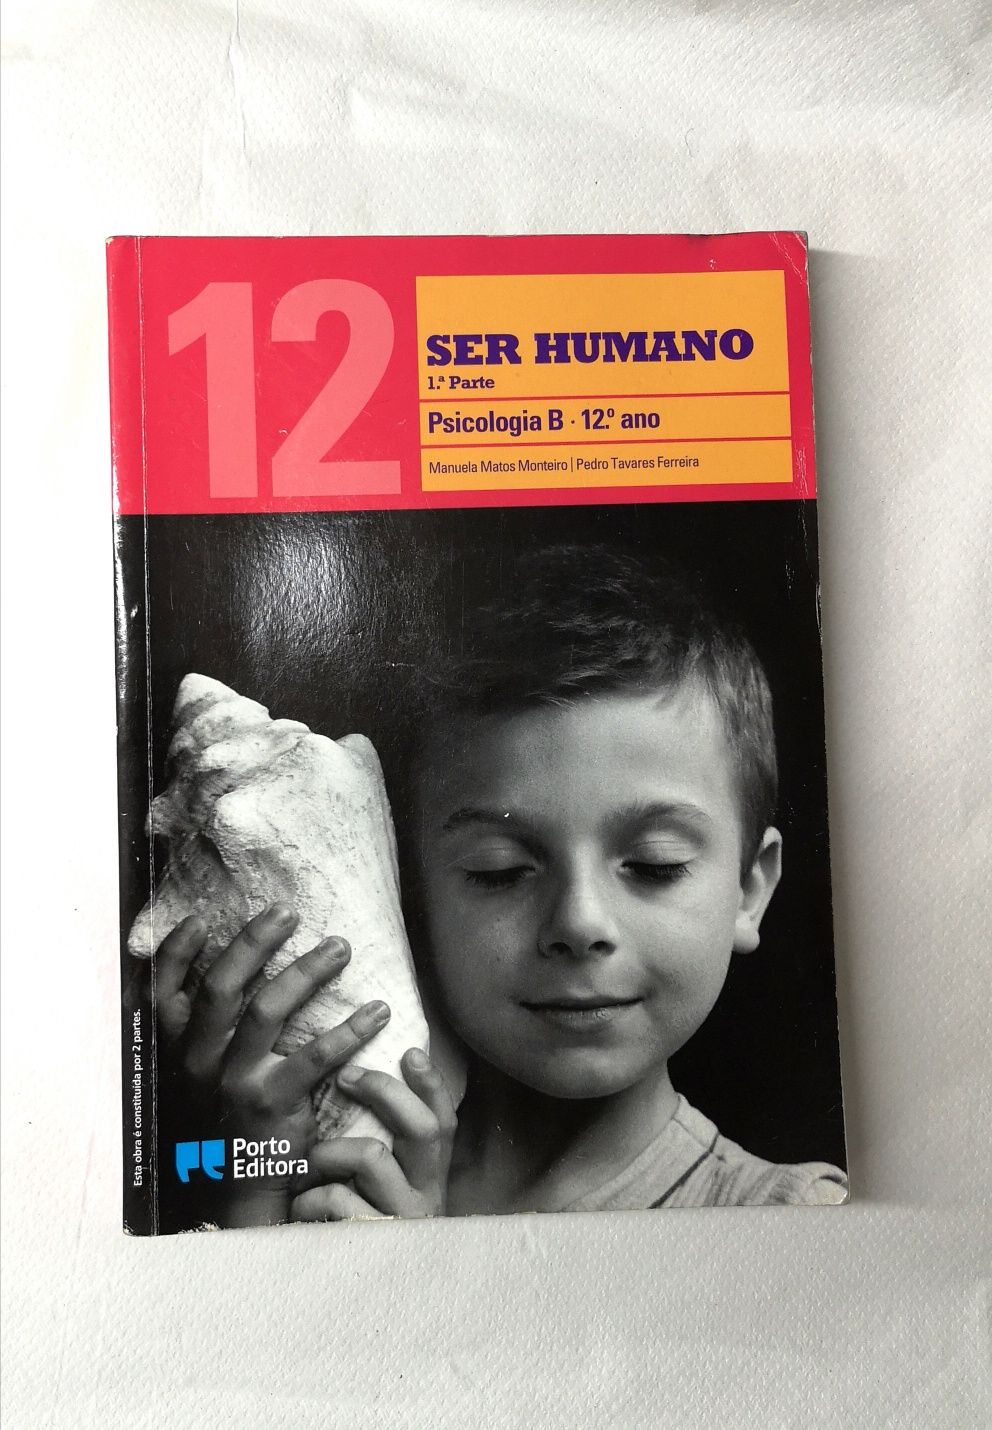 "Ser Humano" Psicologia B 12ano